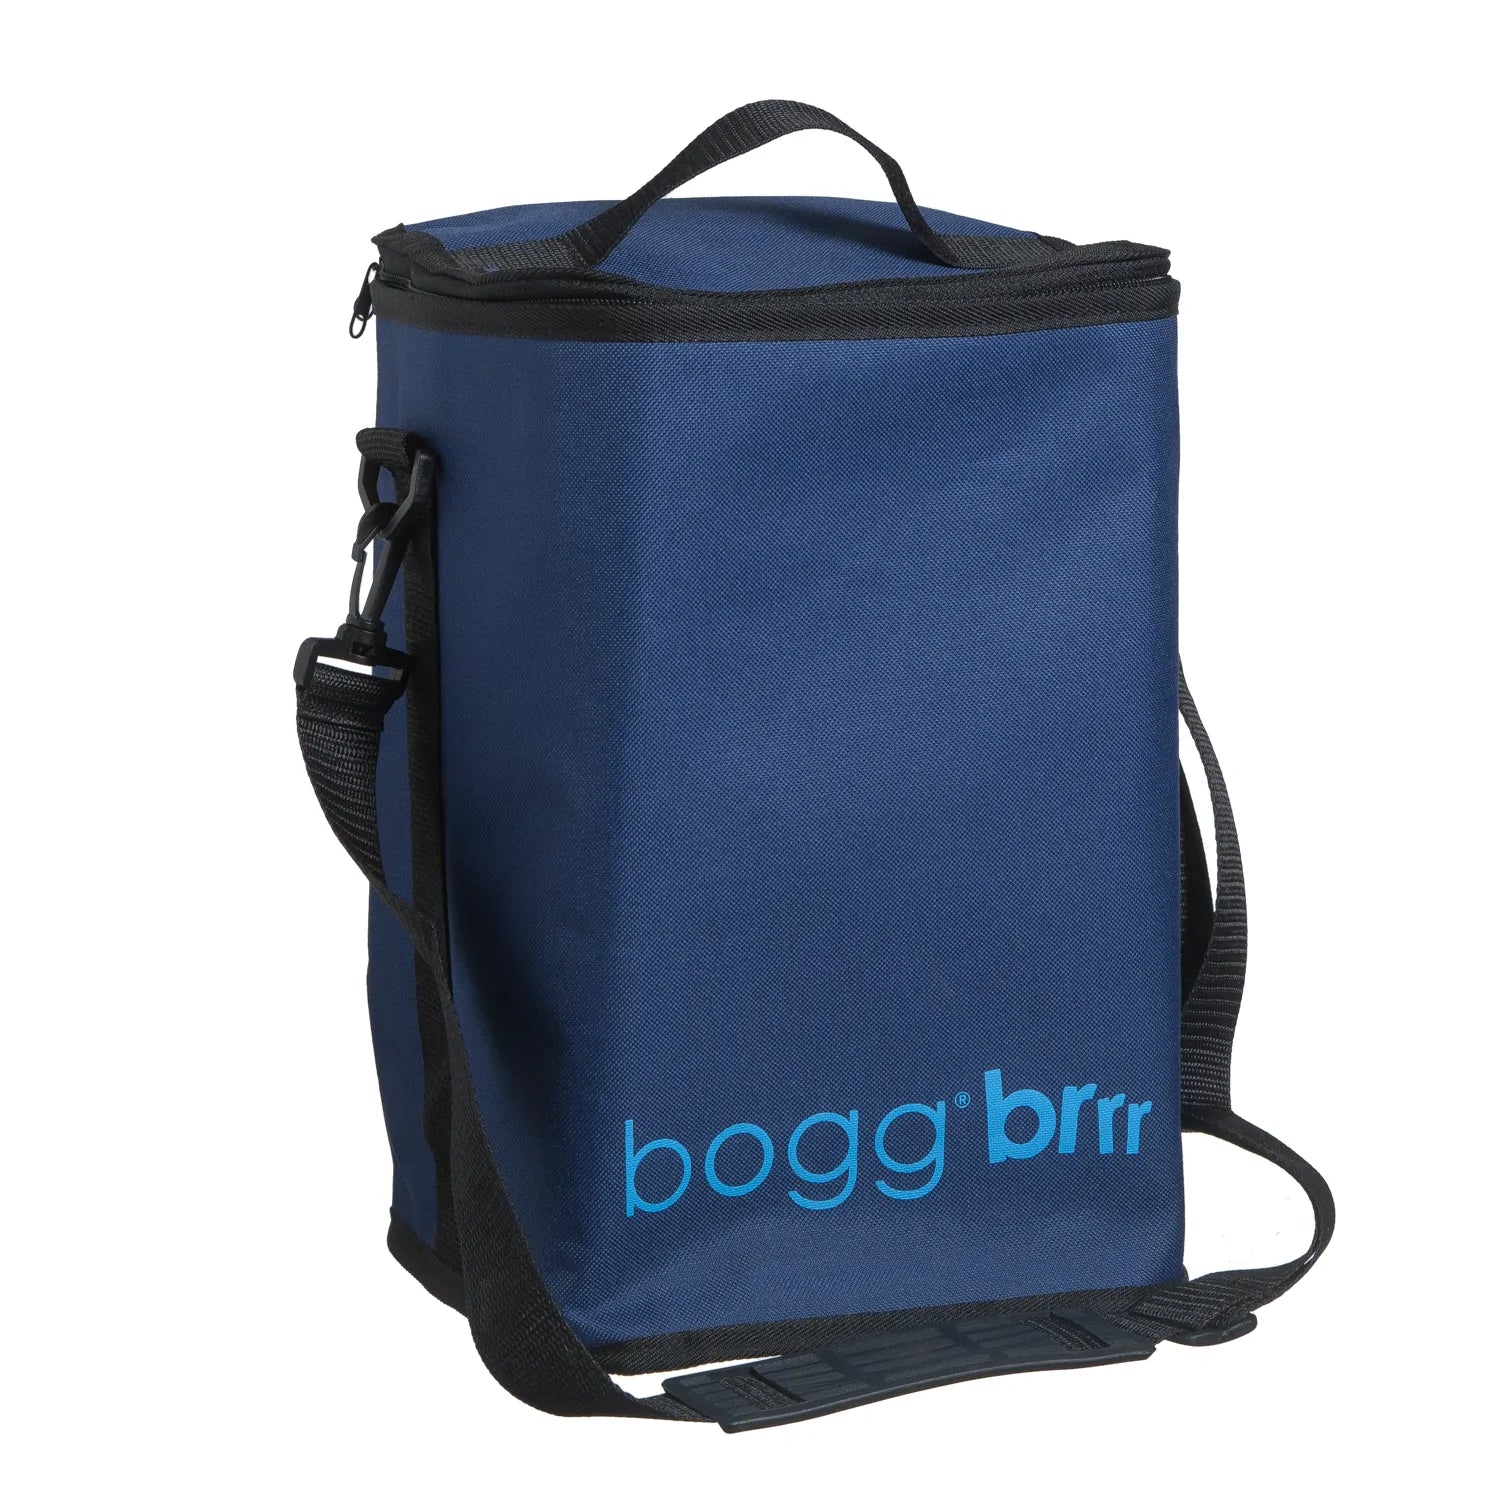 Bogg Brrr - Cooler Bag/Insert